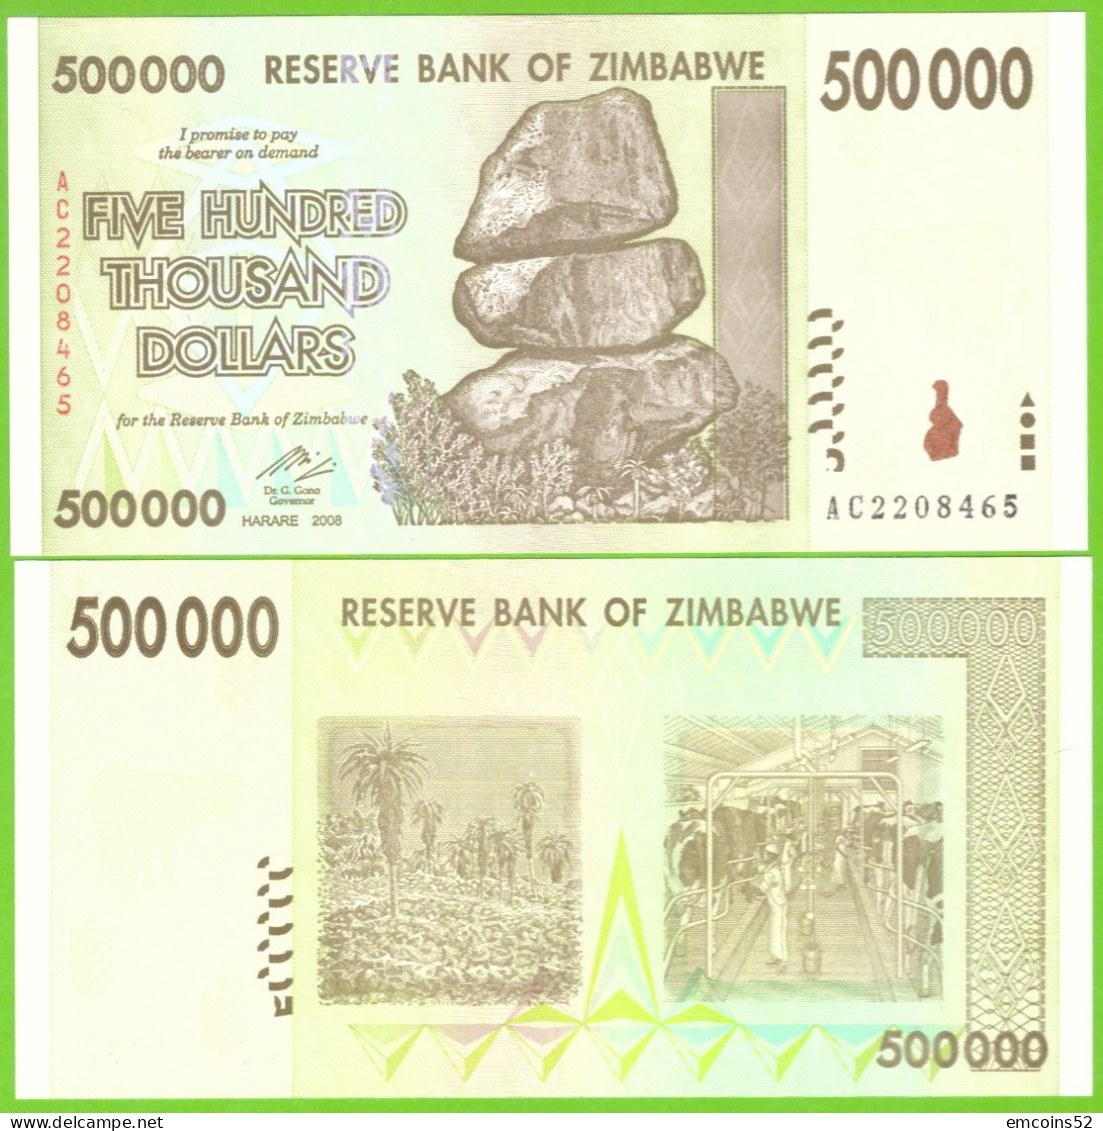 ZIMBABWE 500000 DOLLARS 2008  P-76 UNC - Simbabwe